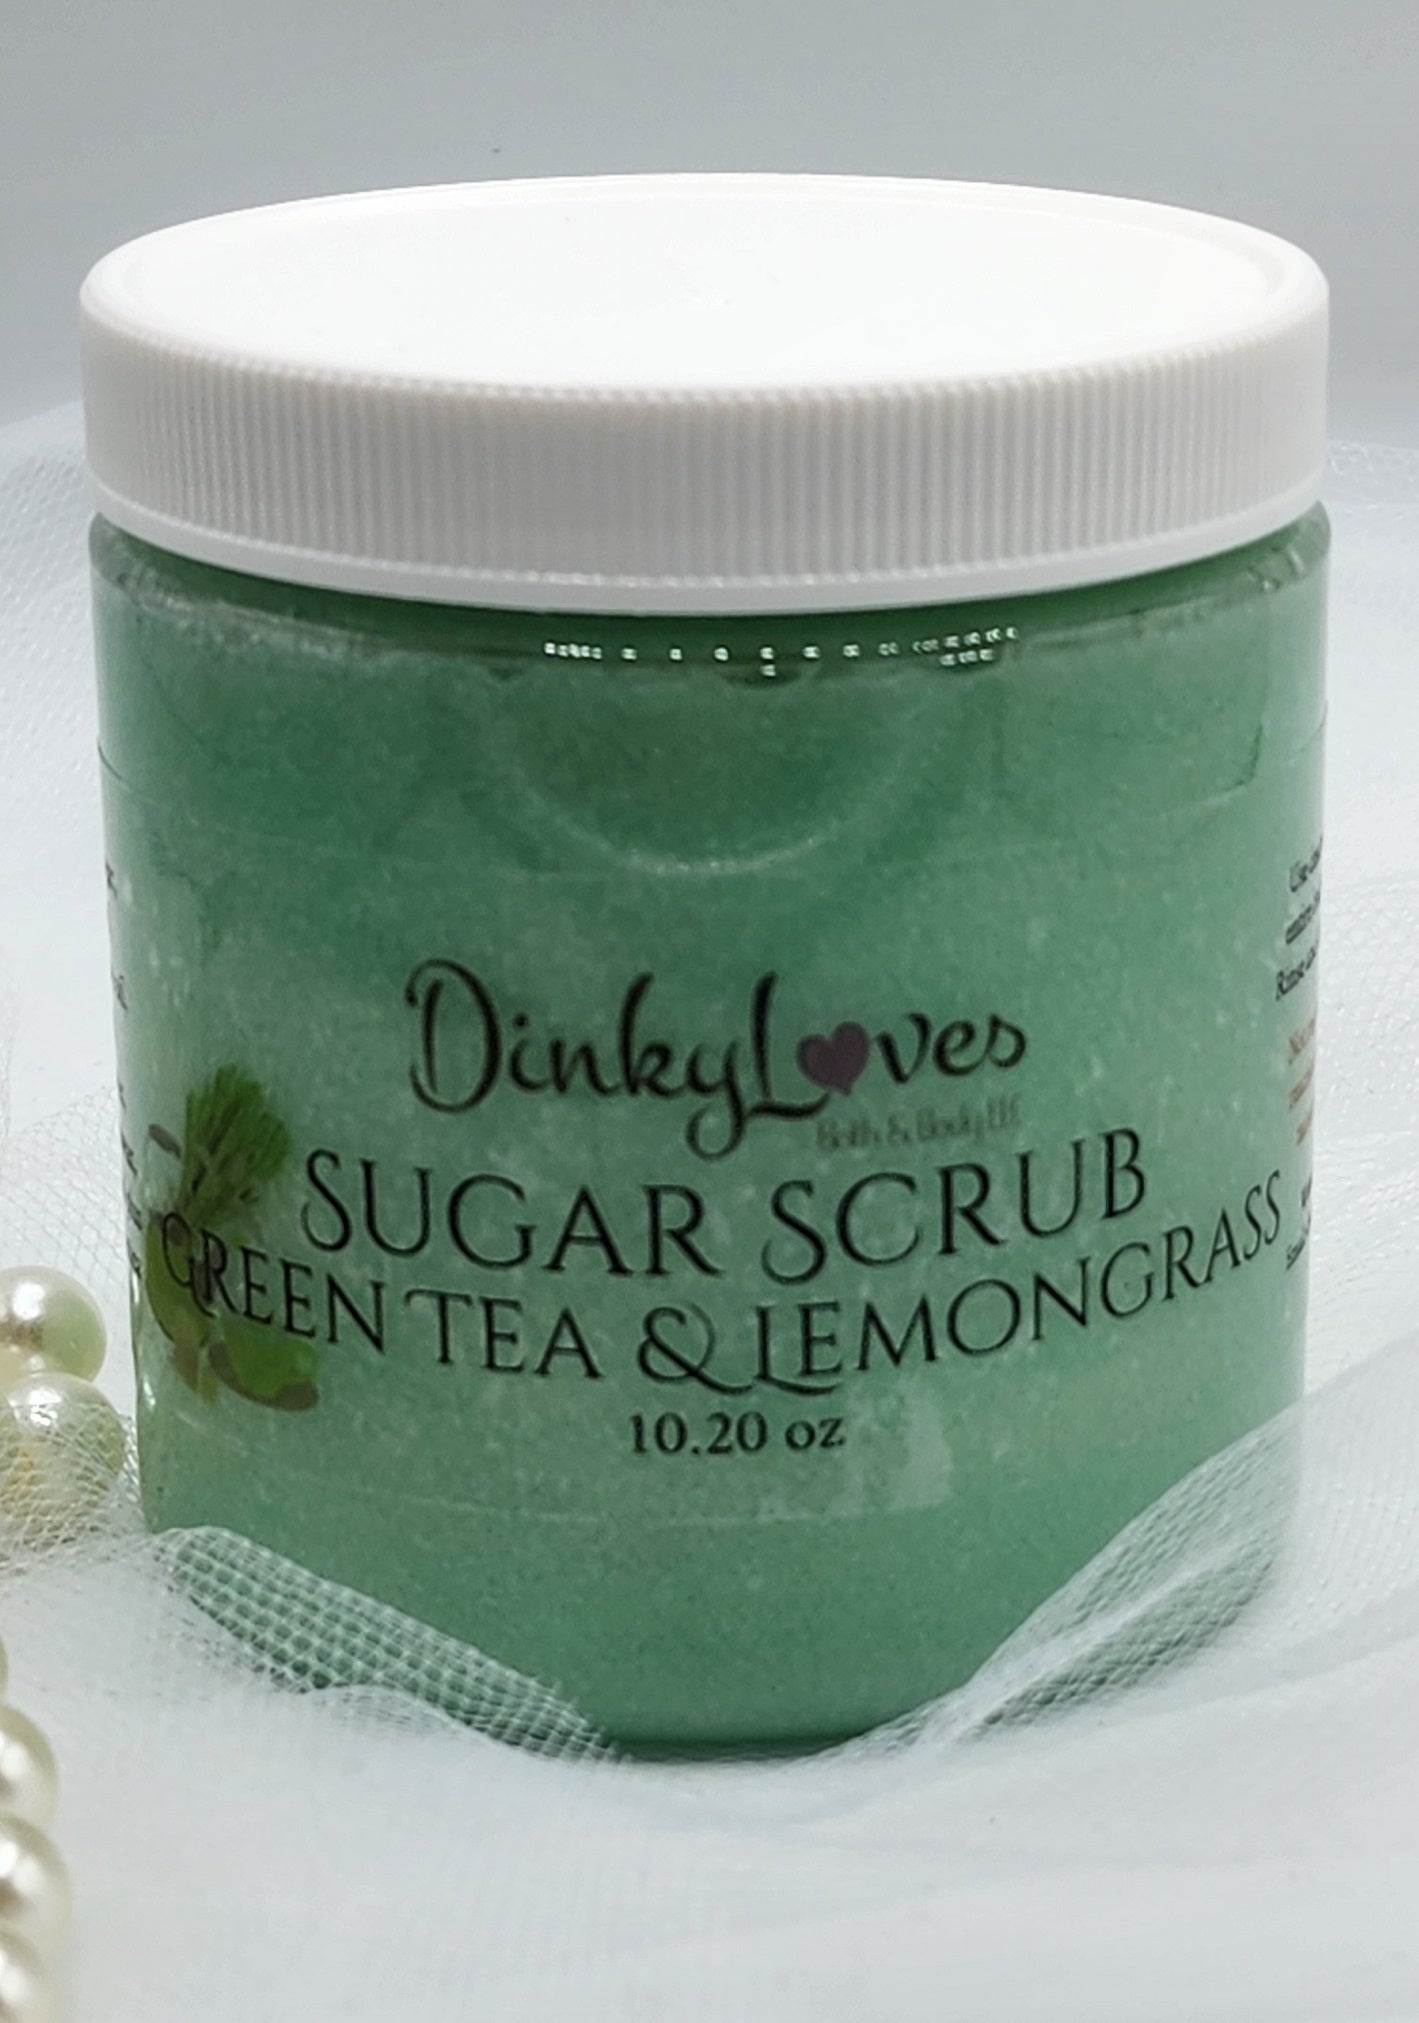 GREEN TEA & LEMONGRASS / Sugar Scrub / Unique Gift Idea / Handmade Sugar Scrub